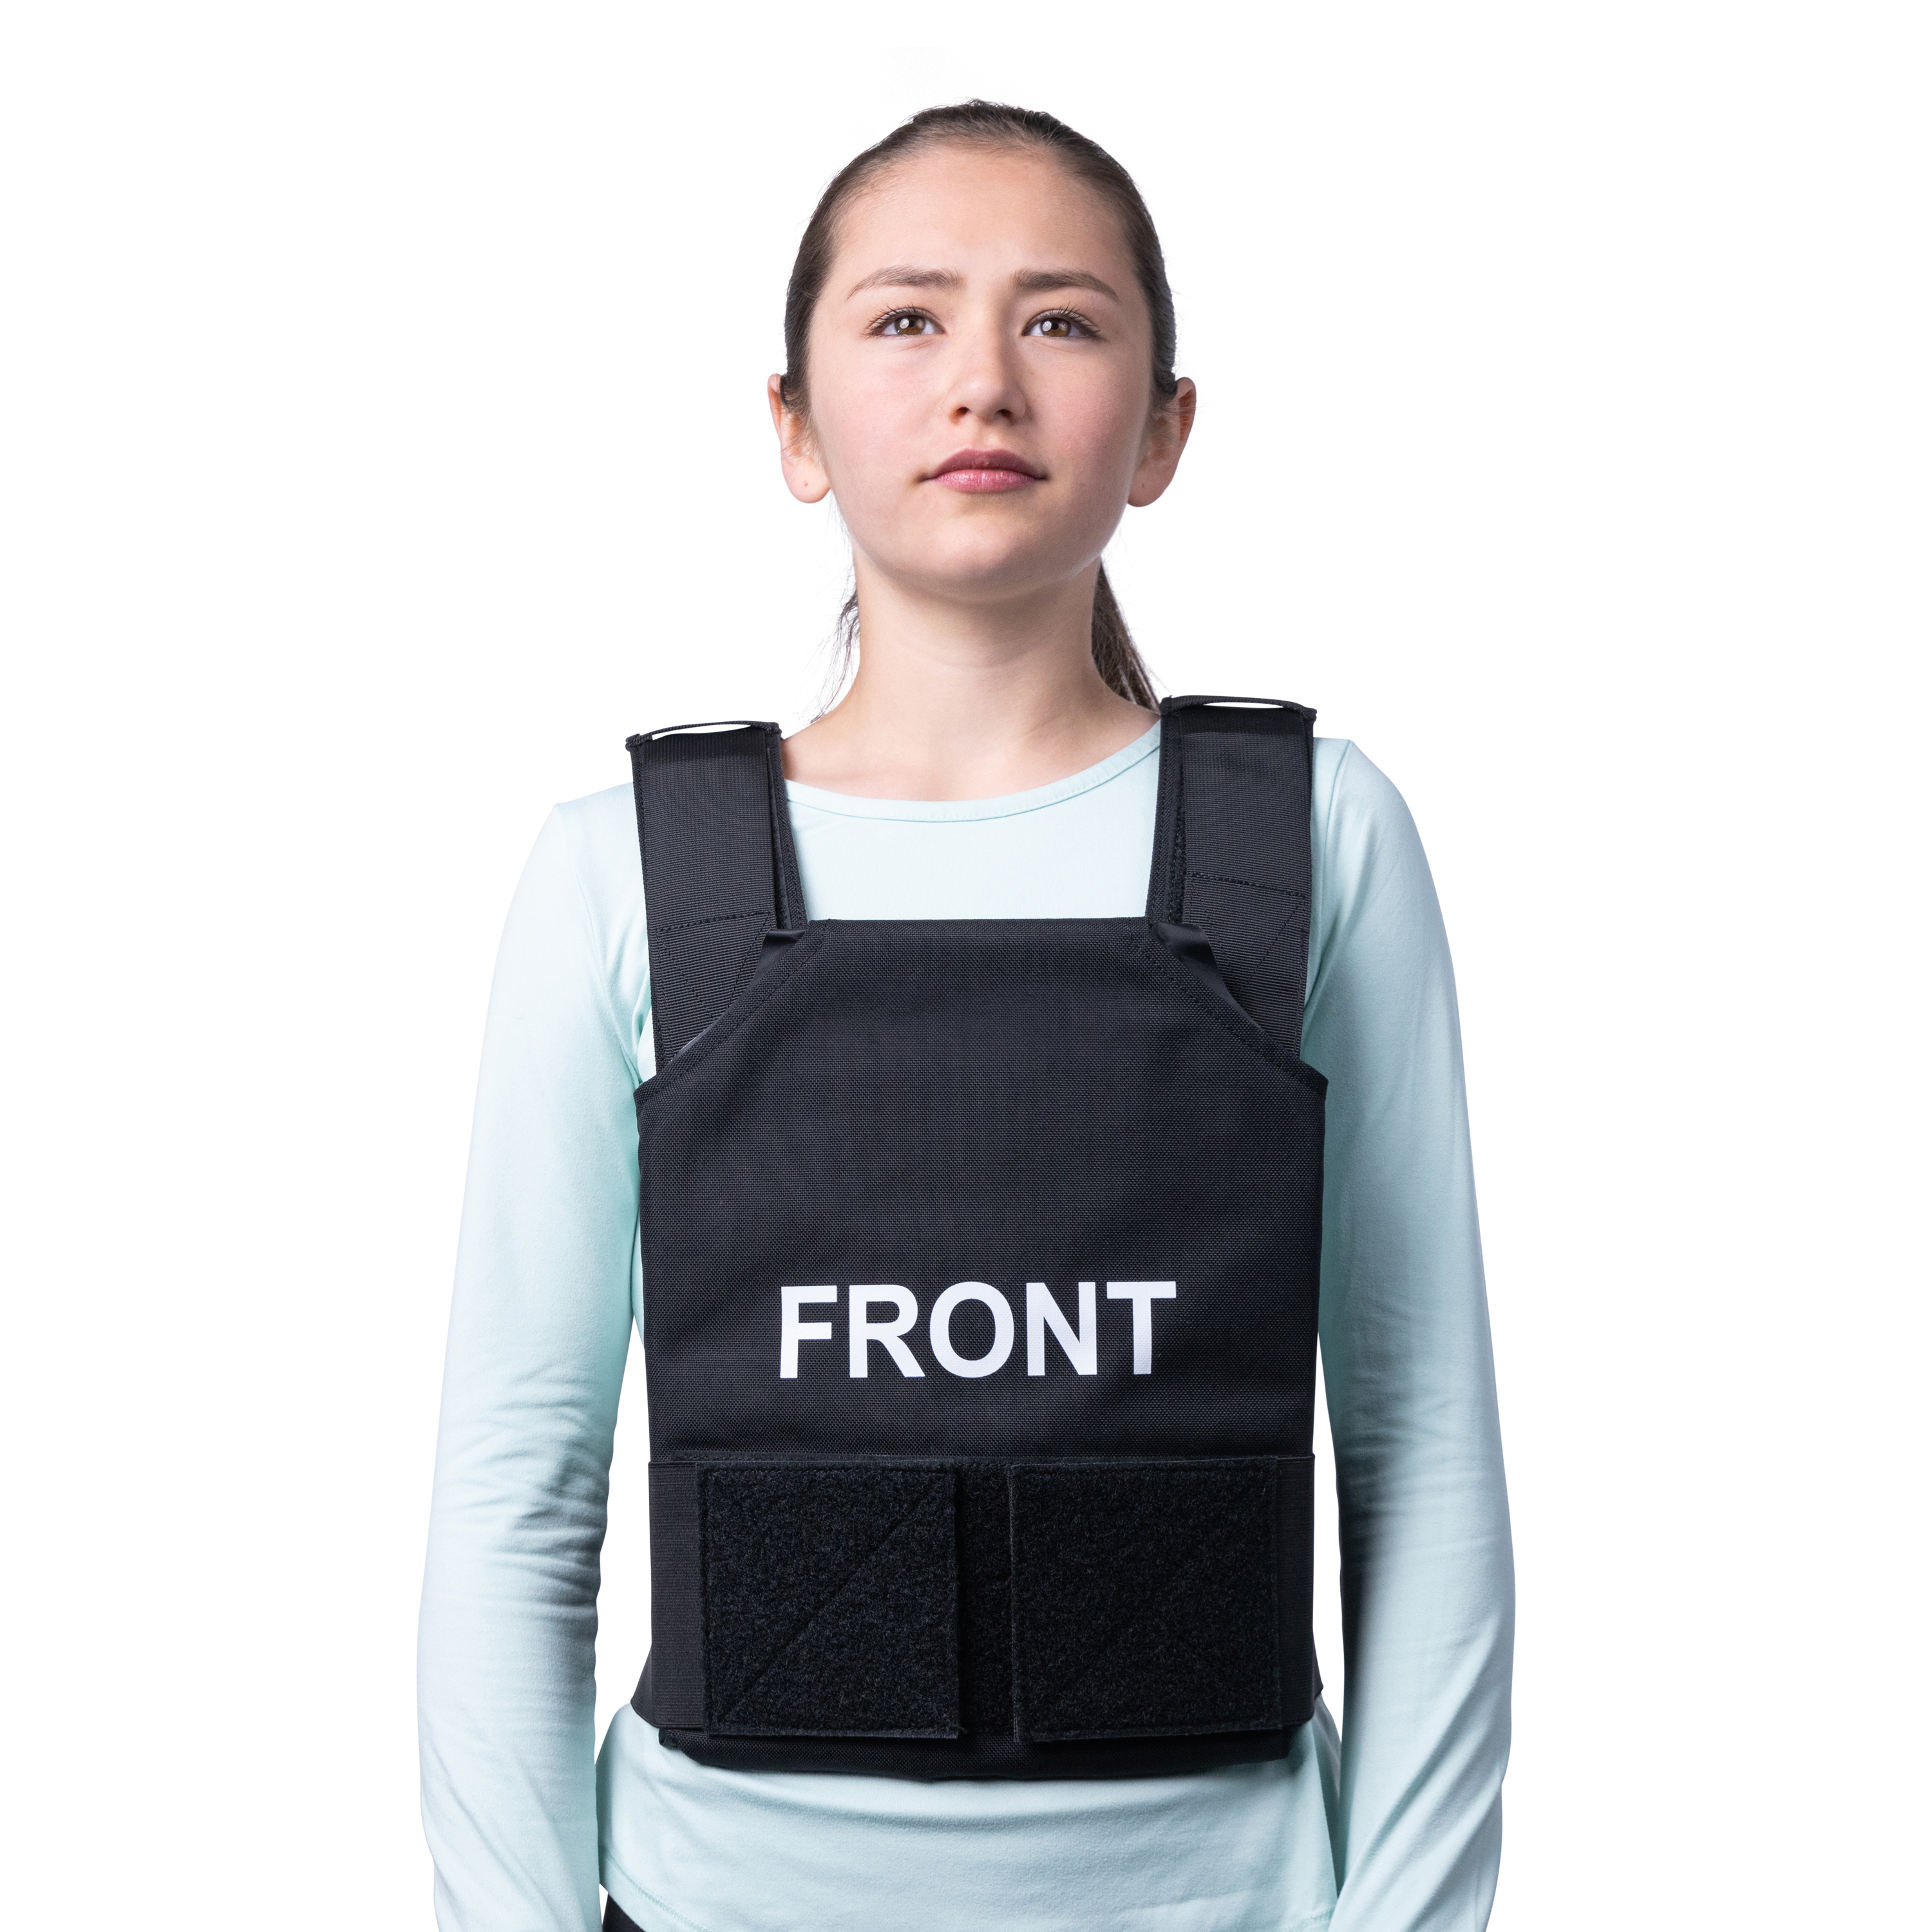 ProtectVest® - Children's Emergency Bulletproof Vest/ Body Armor for Kids